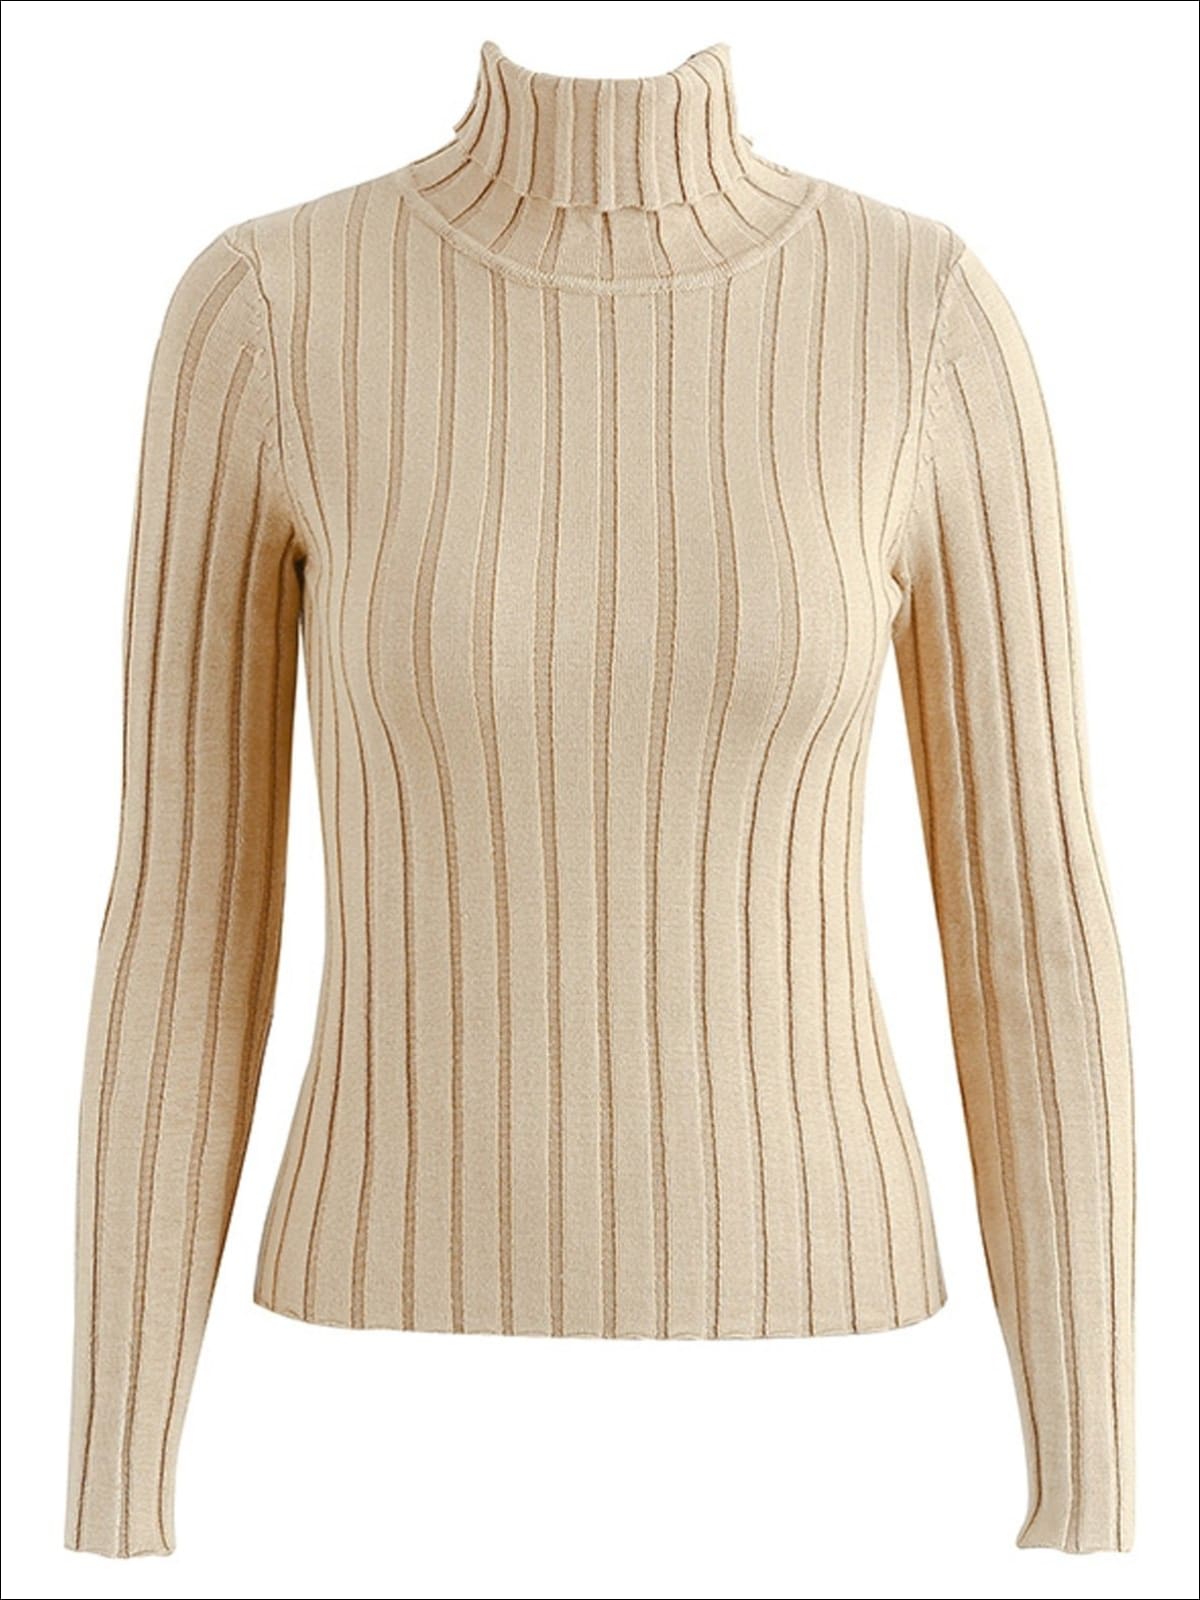 Turtle Neck Sweater | Women's Casual Knit Sweater - Mia Belle Girls